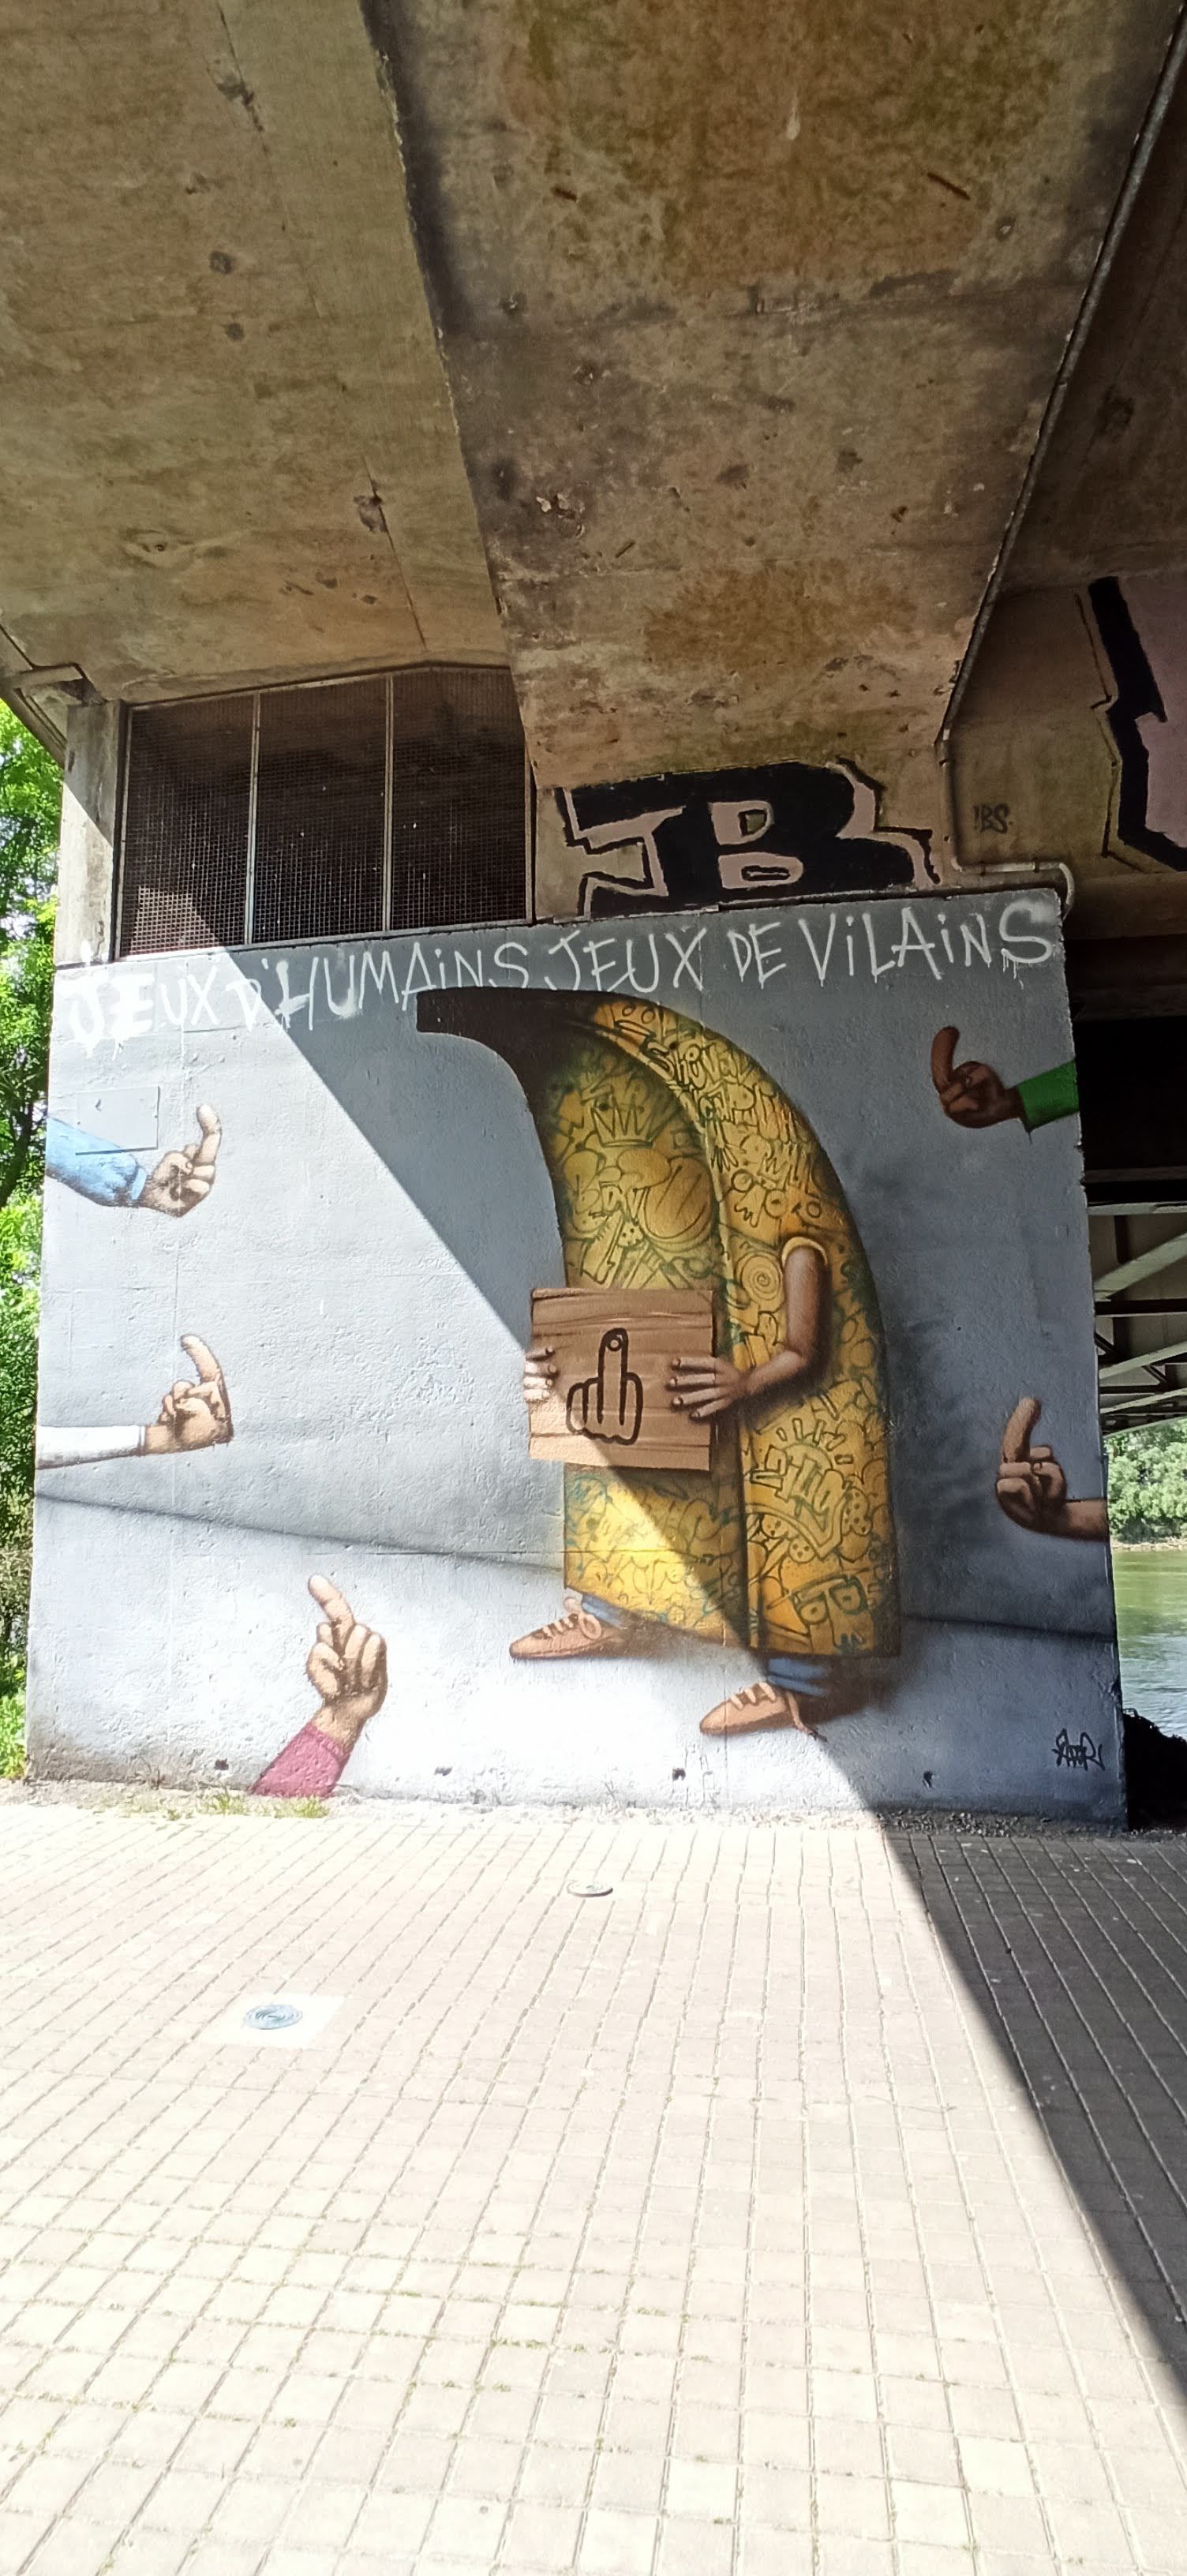 Graffiti 5055 Jeux d'humains jeux de vilains de Ador à Nantes France